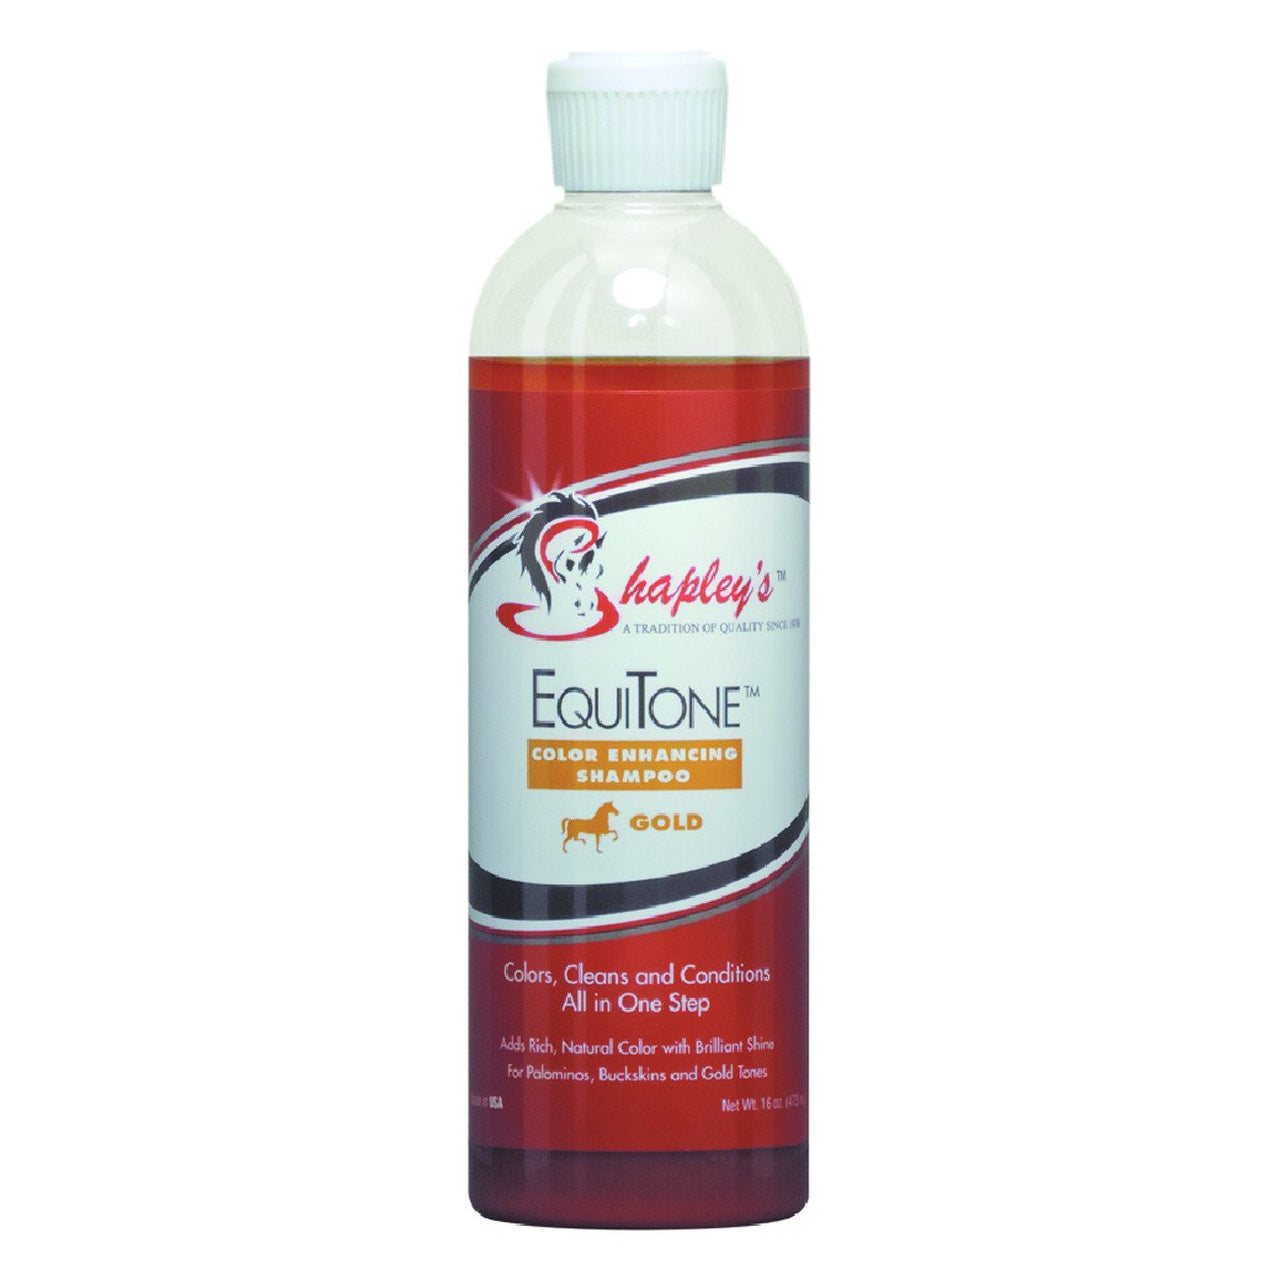 Shapleys Equitone Goldening Shampoo 946Ml Bottle - Equine Care Shapleys - Canada